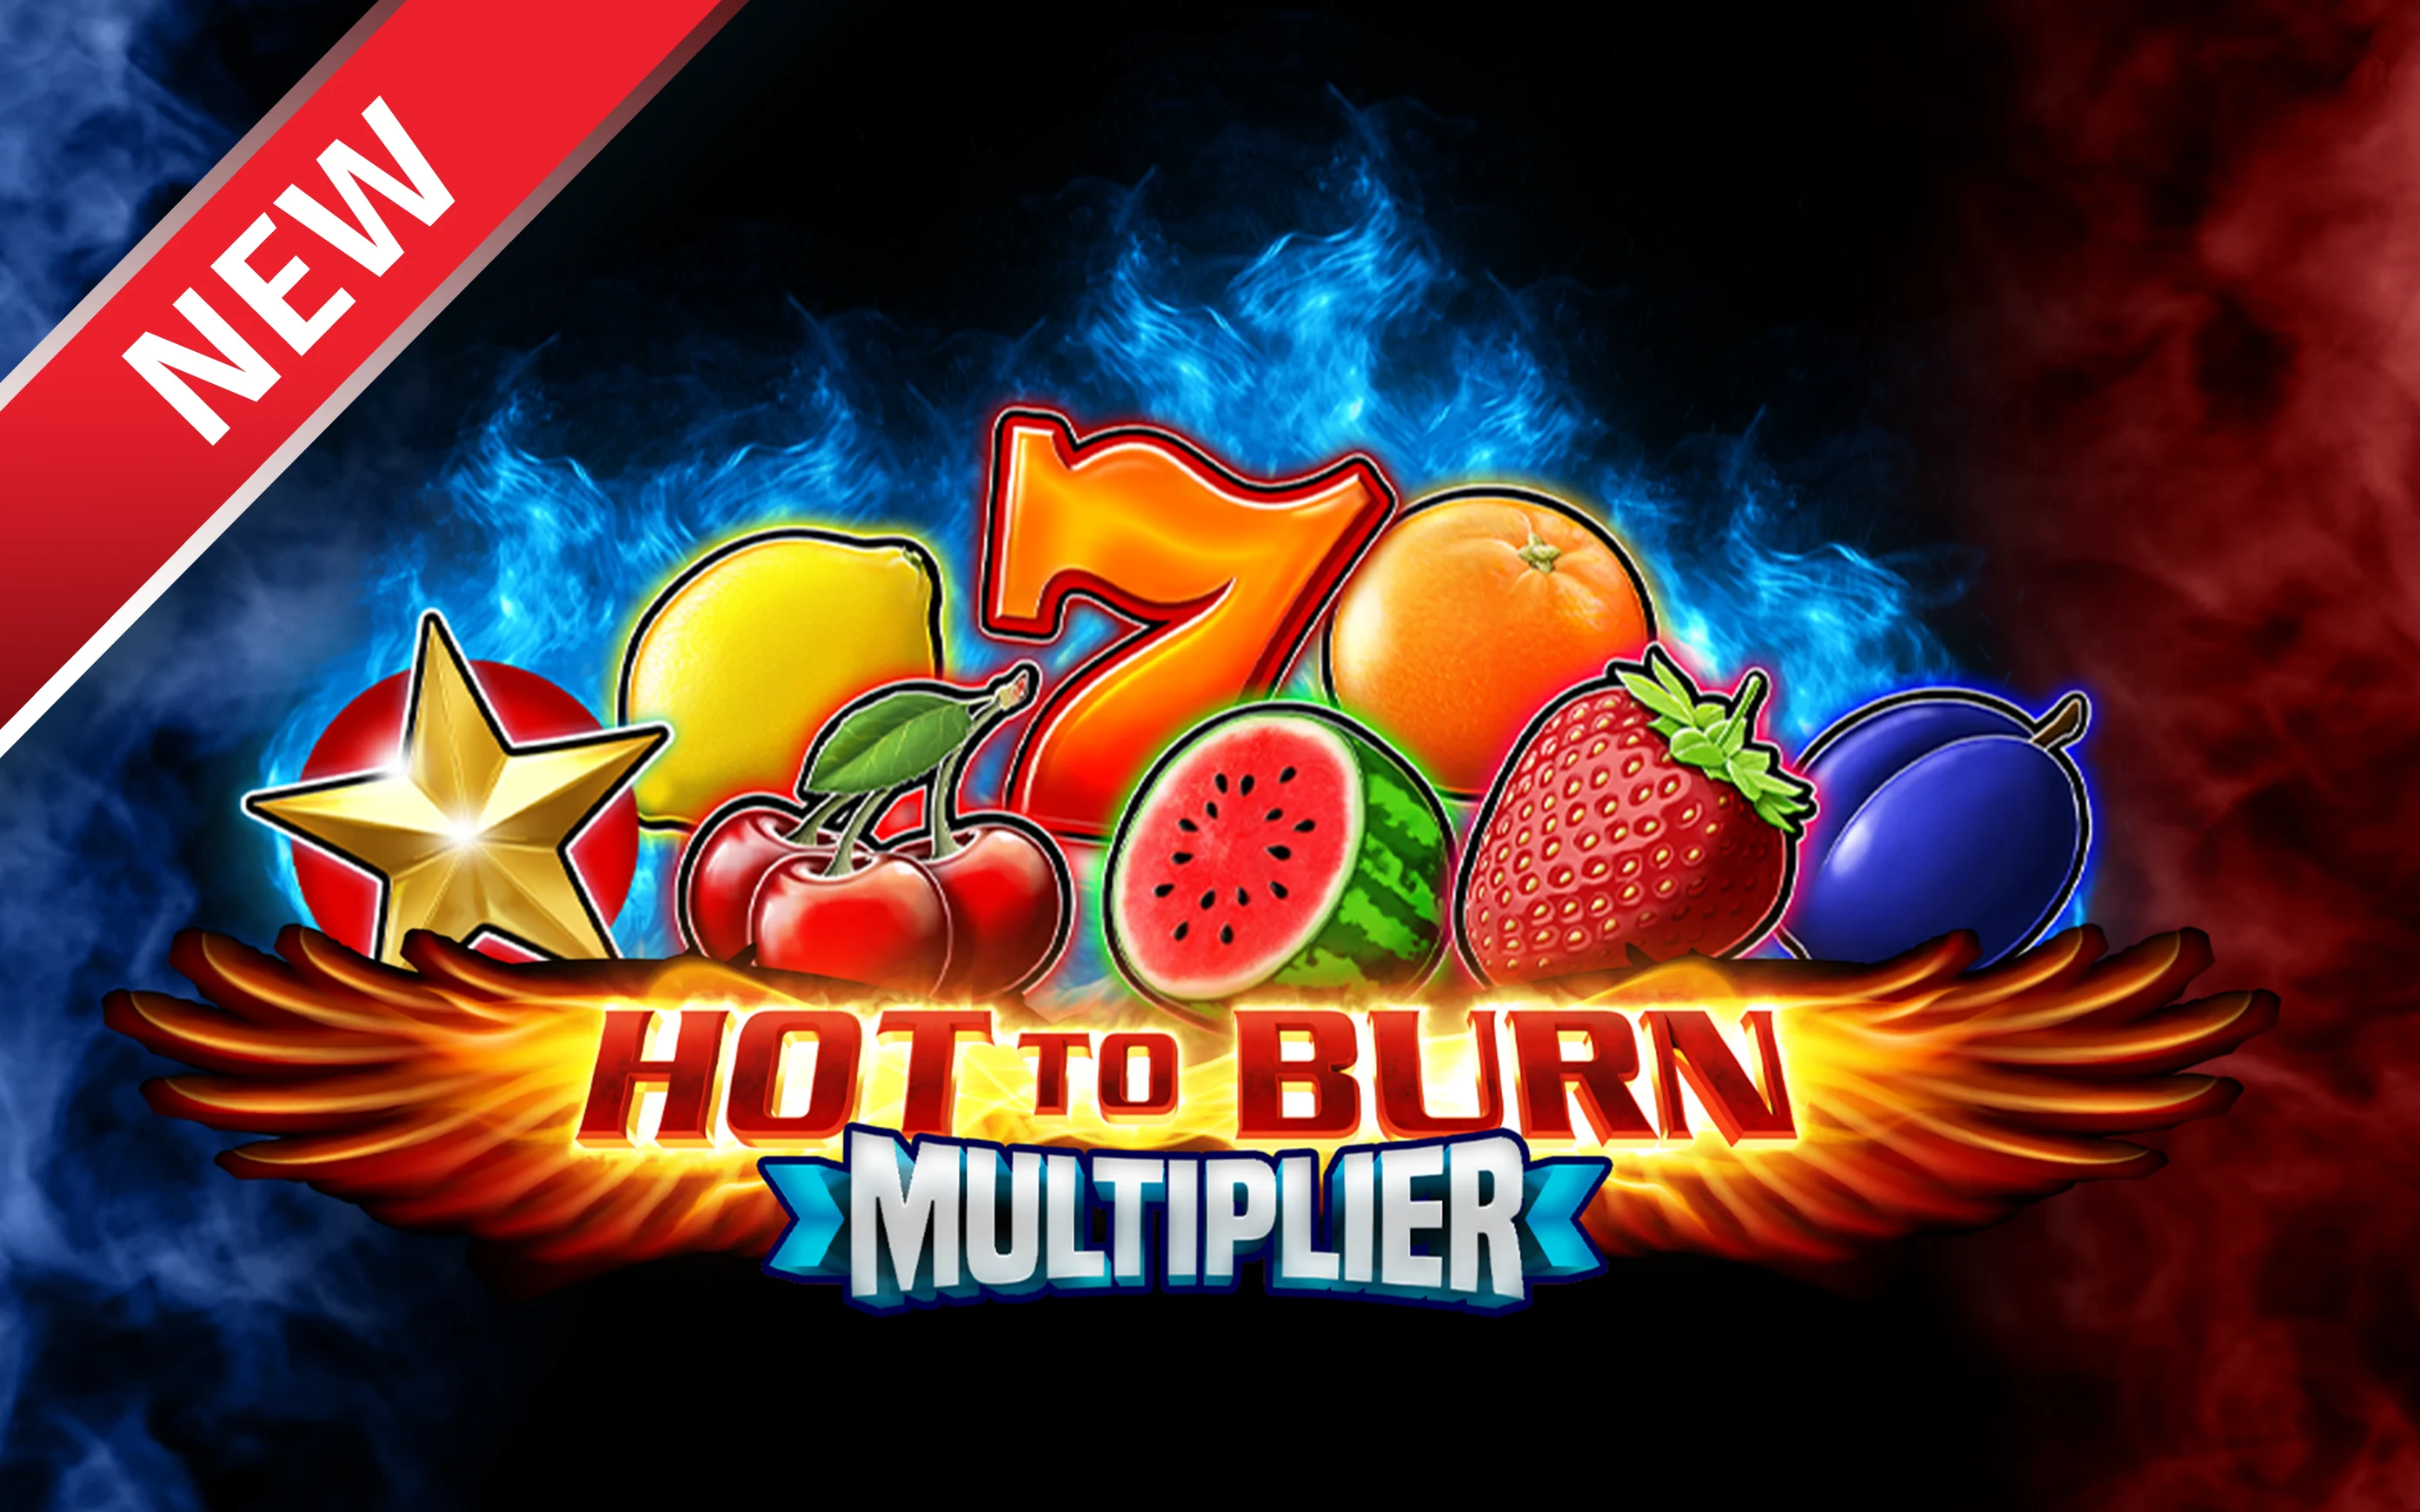 Jouer à Hot to Burn Multiplier sur le casino en ligne Starcasino.be